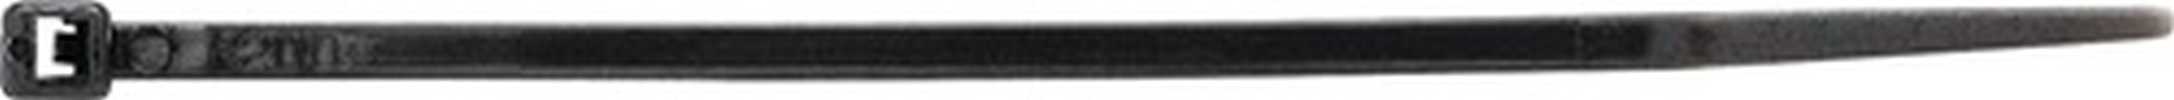 Kabelbinder  Länge 450 mm Breite 4,8 mm Polyamid schwarz UV-beständig